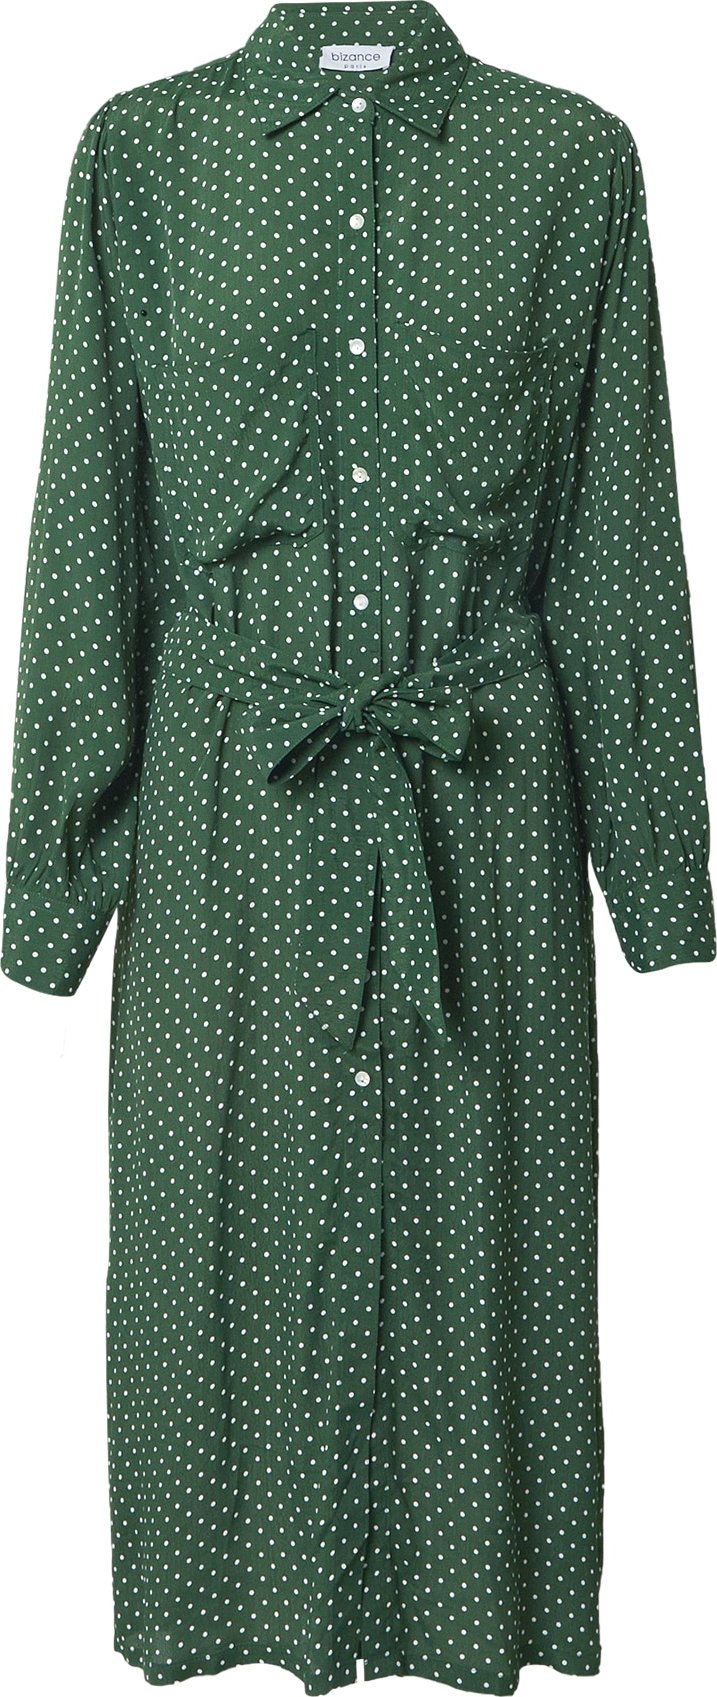 Bizance Paris Košilové šaty 'CLORIS' zelená / bílá